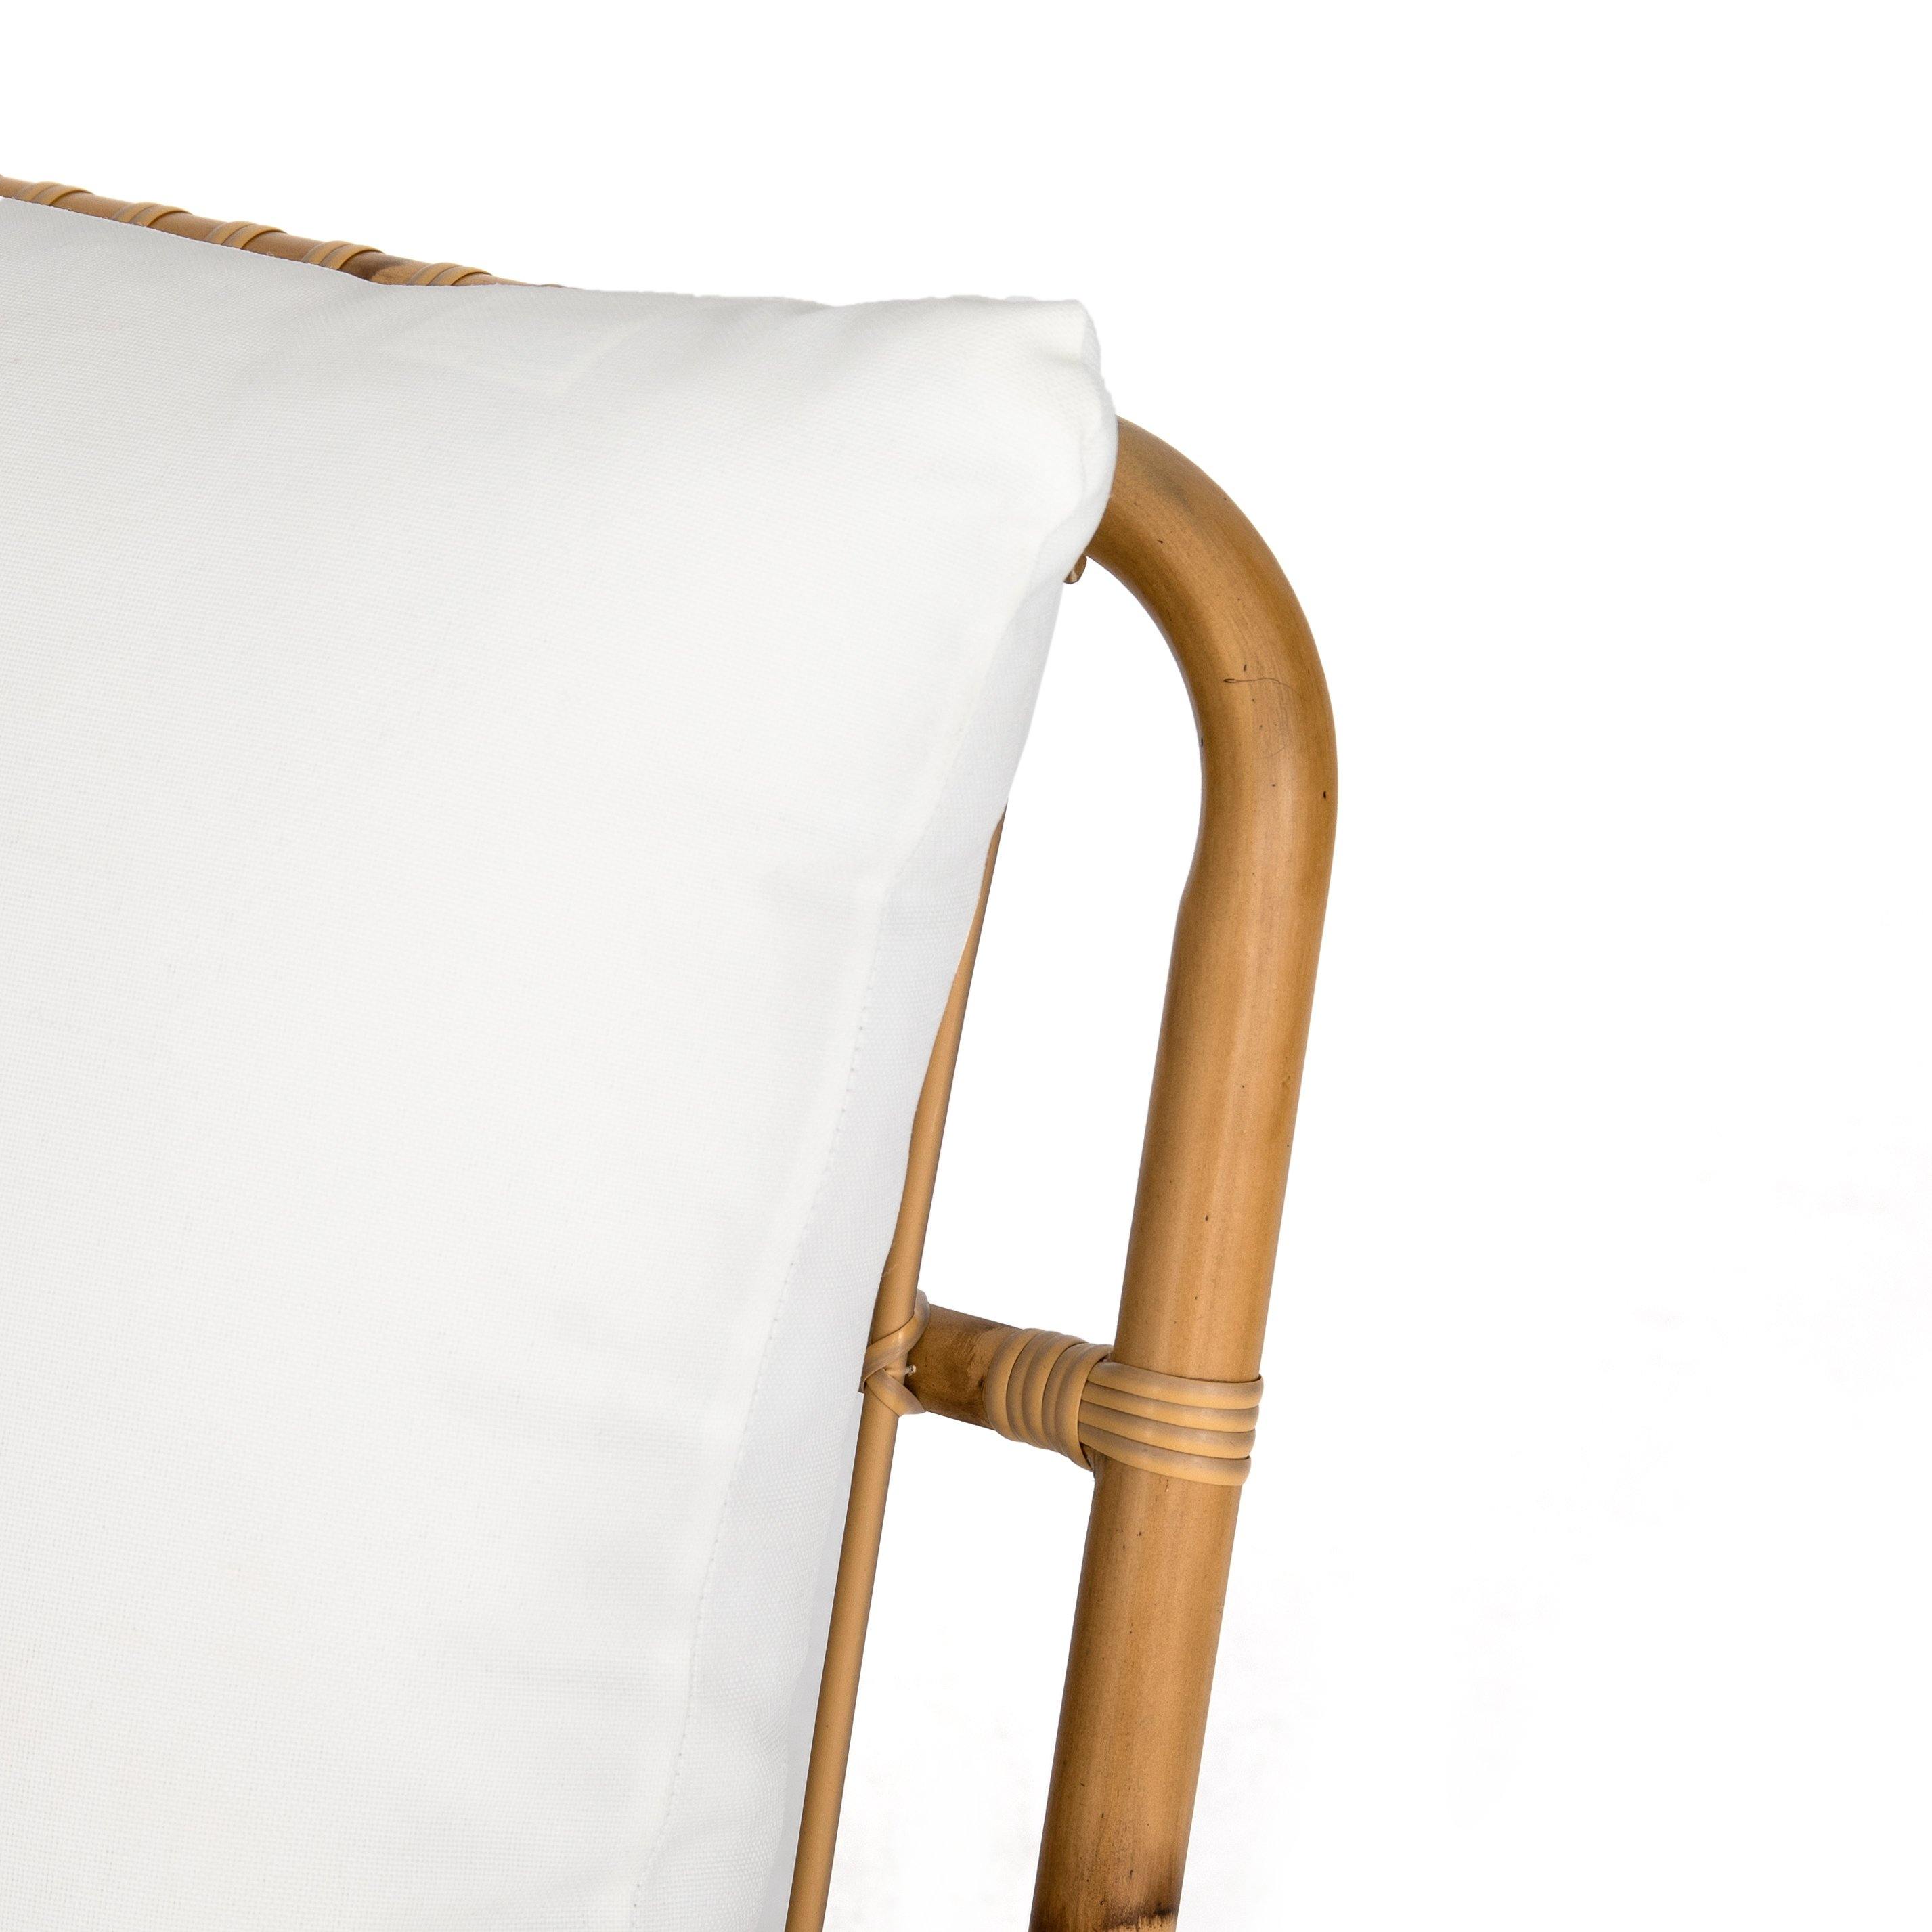 Riley Outdoor Chair - Reimagine Designs - Outdoor, Outdoor Armchairs